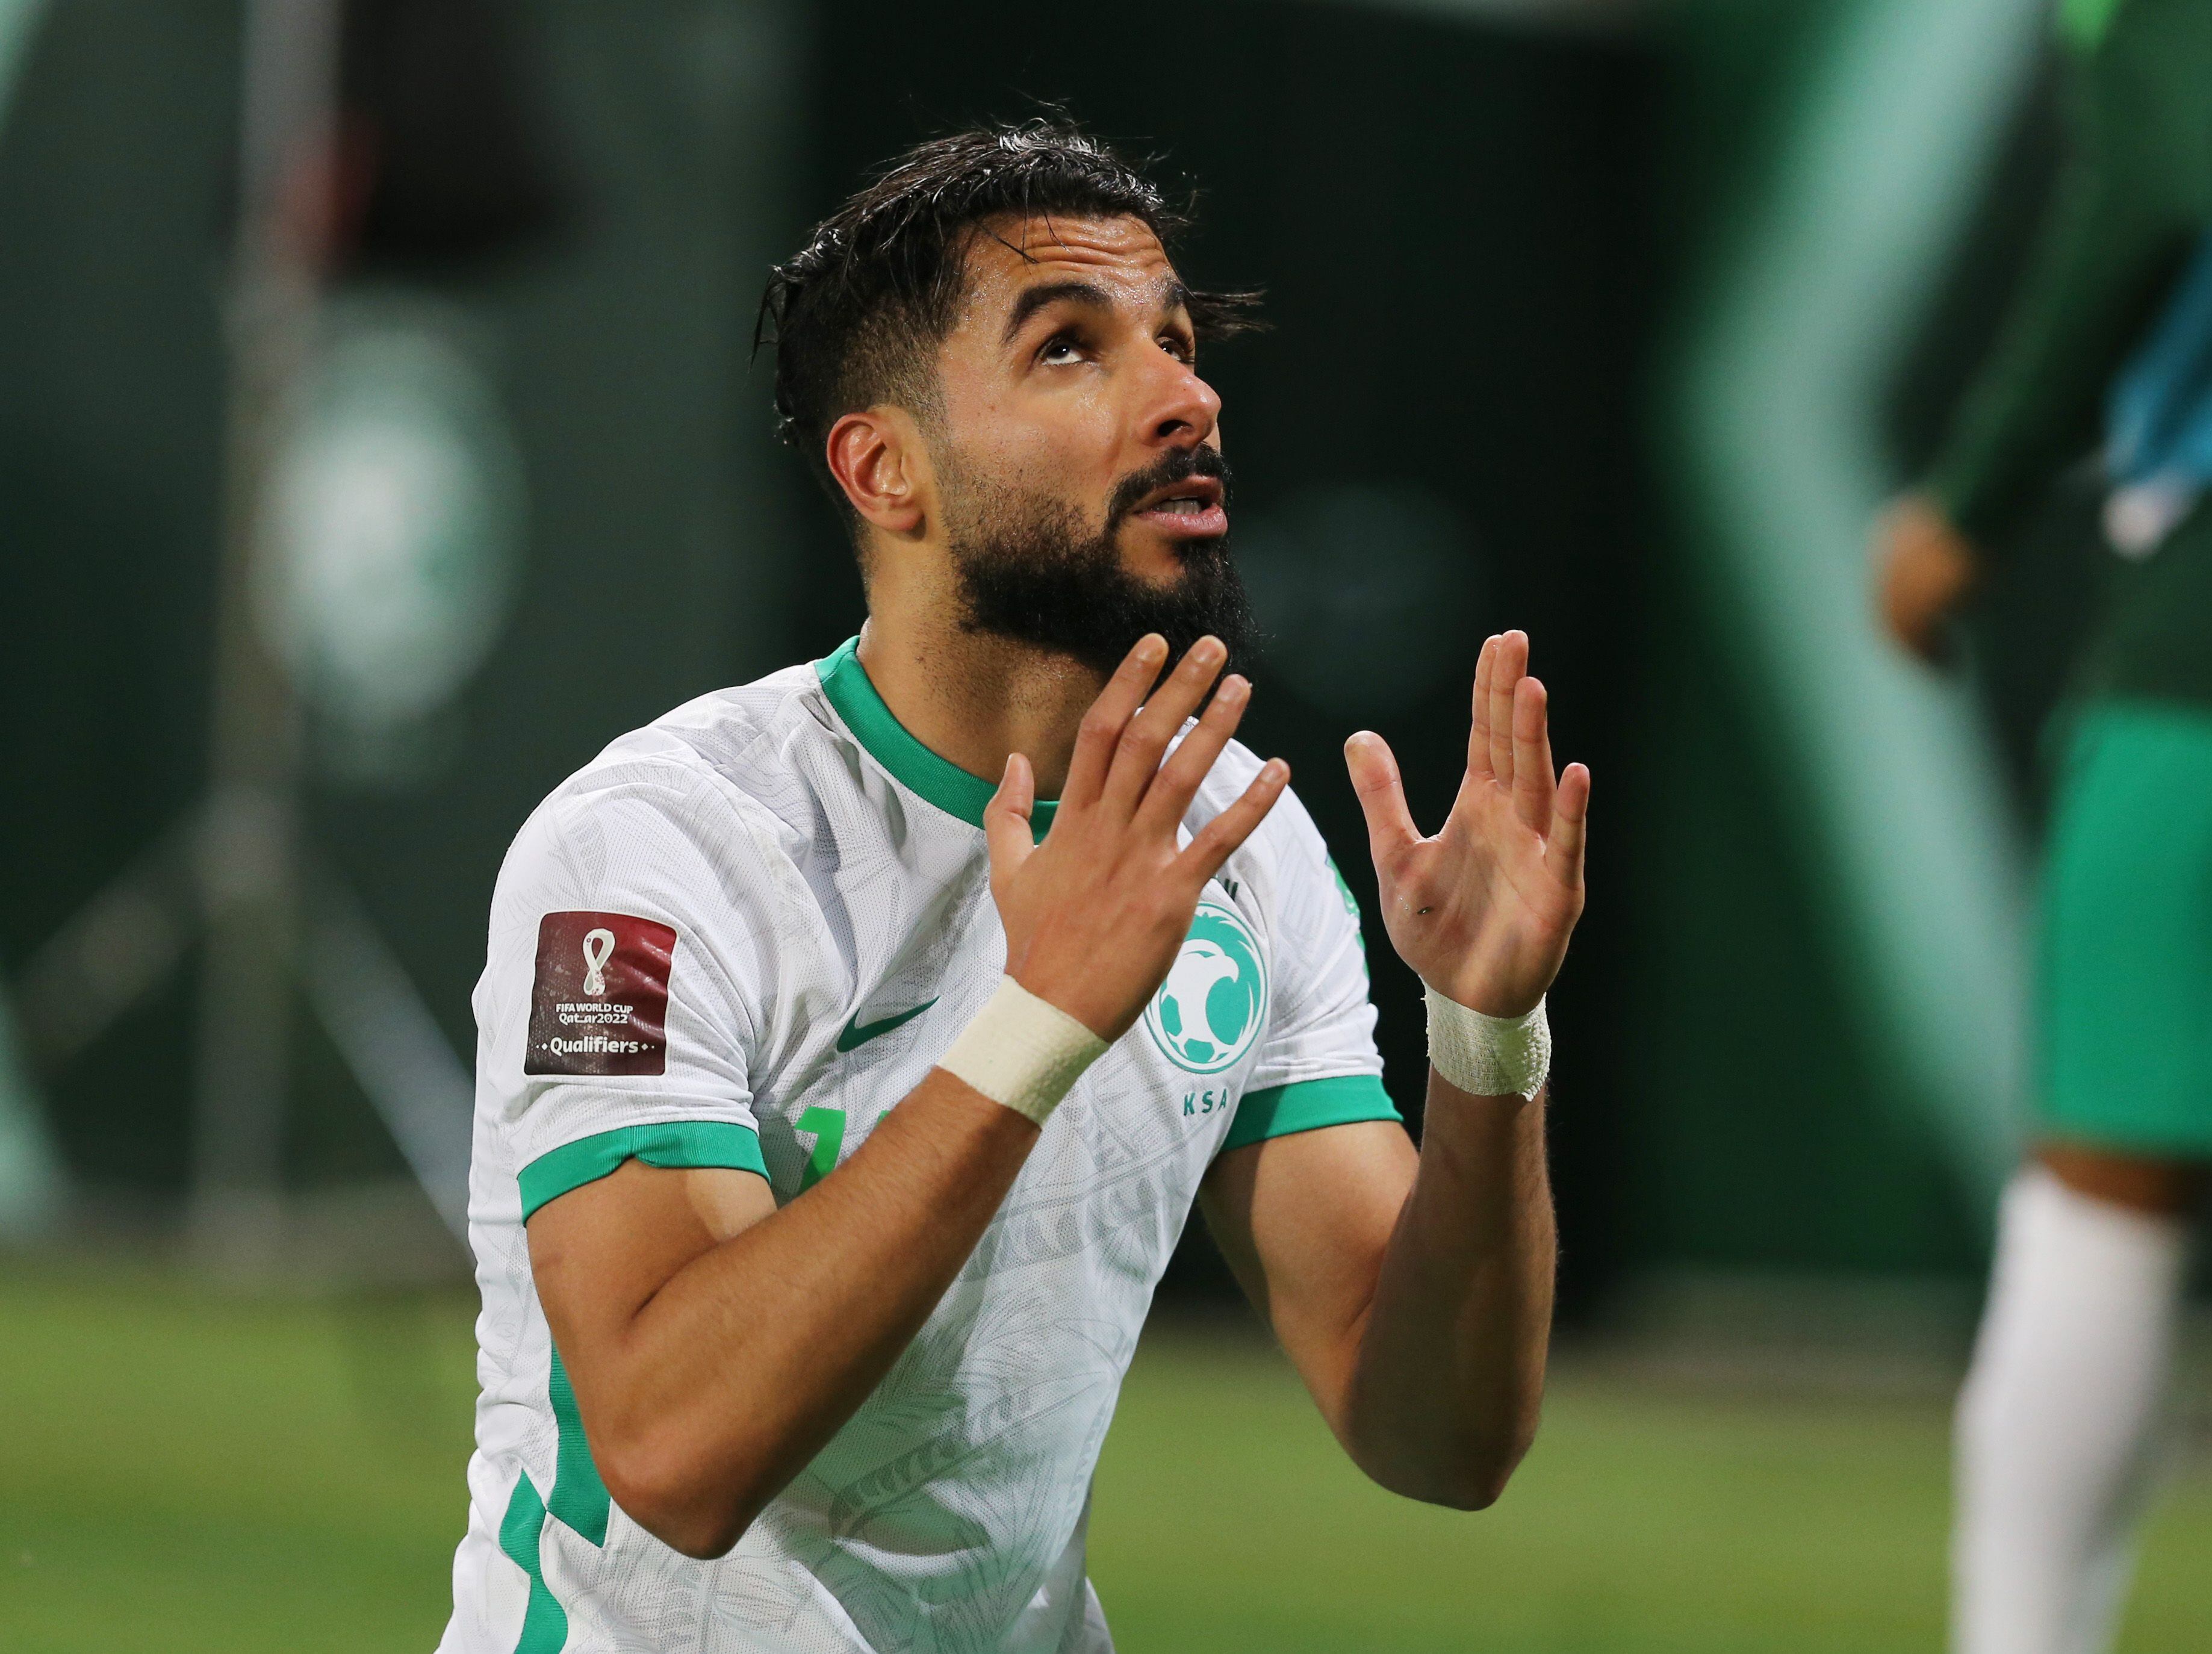 El goleador de Arabia Saudita, Saleh Al-Shehri, sufrió una dura lesión a 7 meses del Mundial de Qatar. Foto: REUTERS/Ahmed Yosri